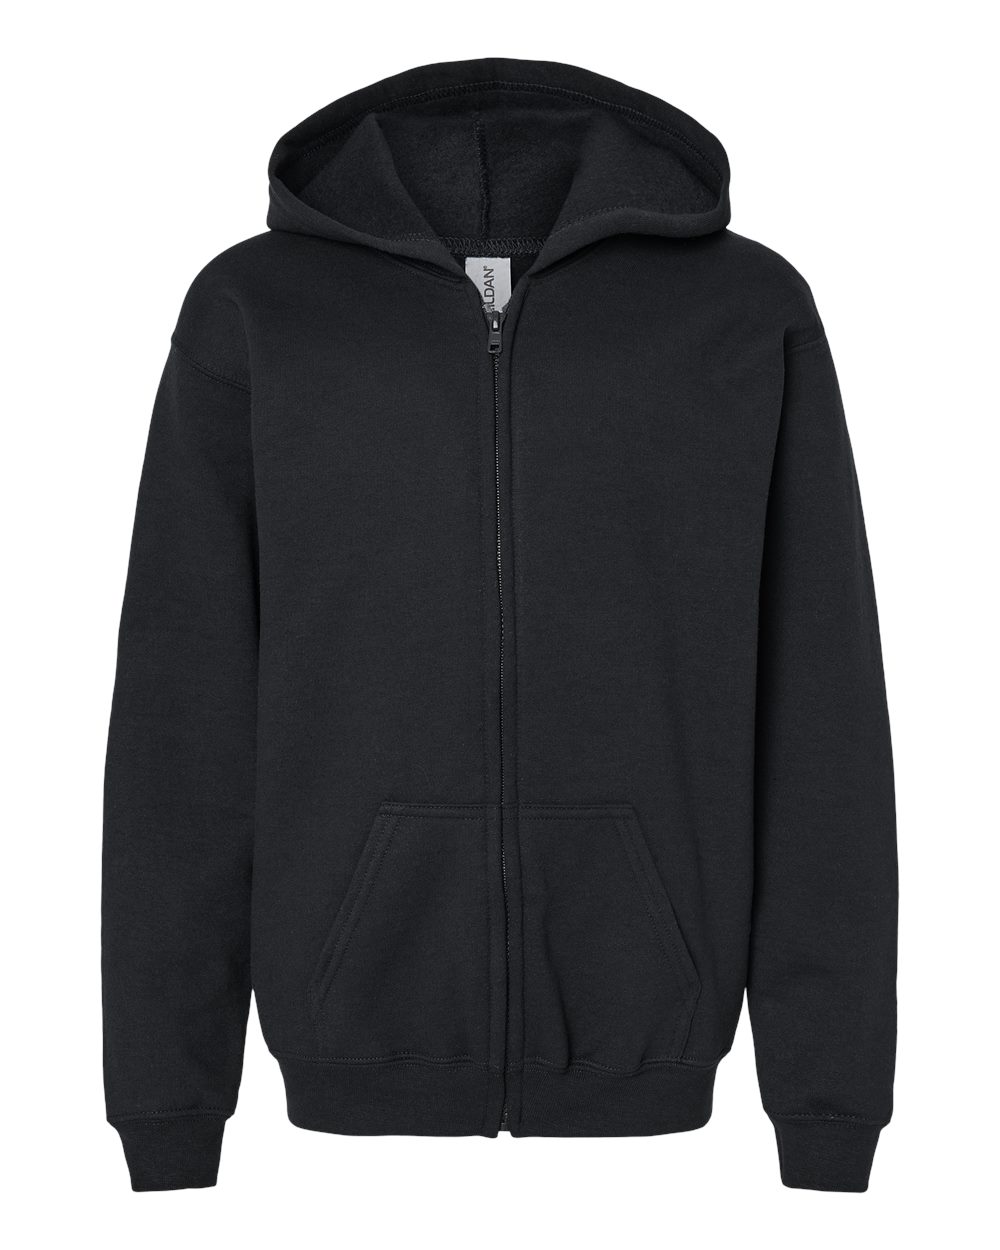 kids hoodies Heavy Blend™ Youth Full-Zip Hooded Sweatshirt